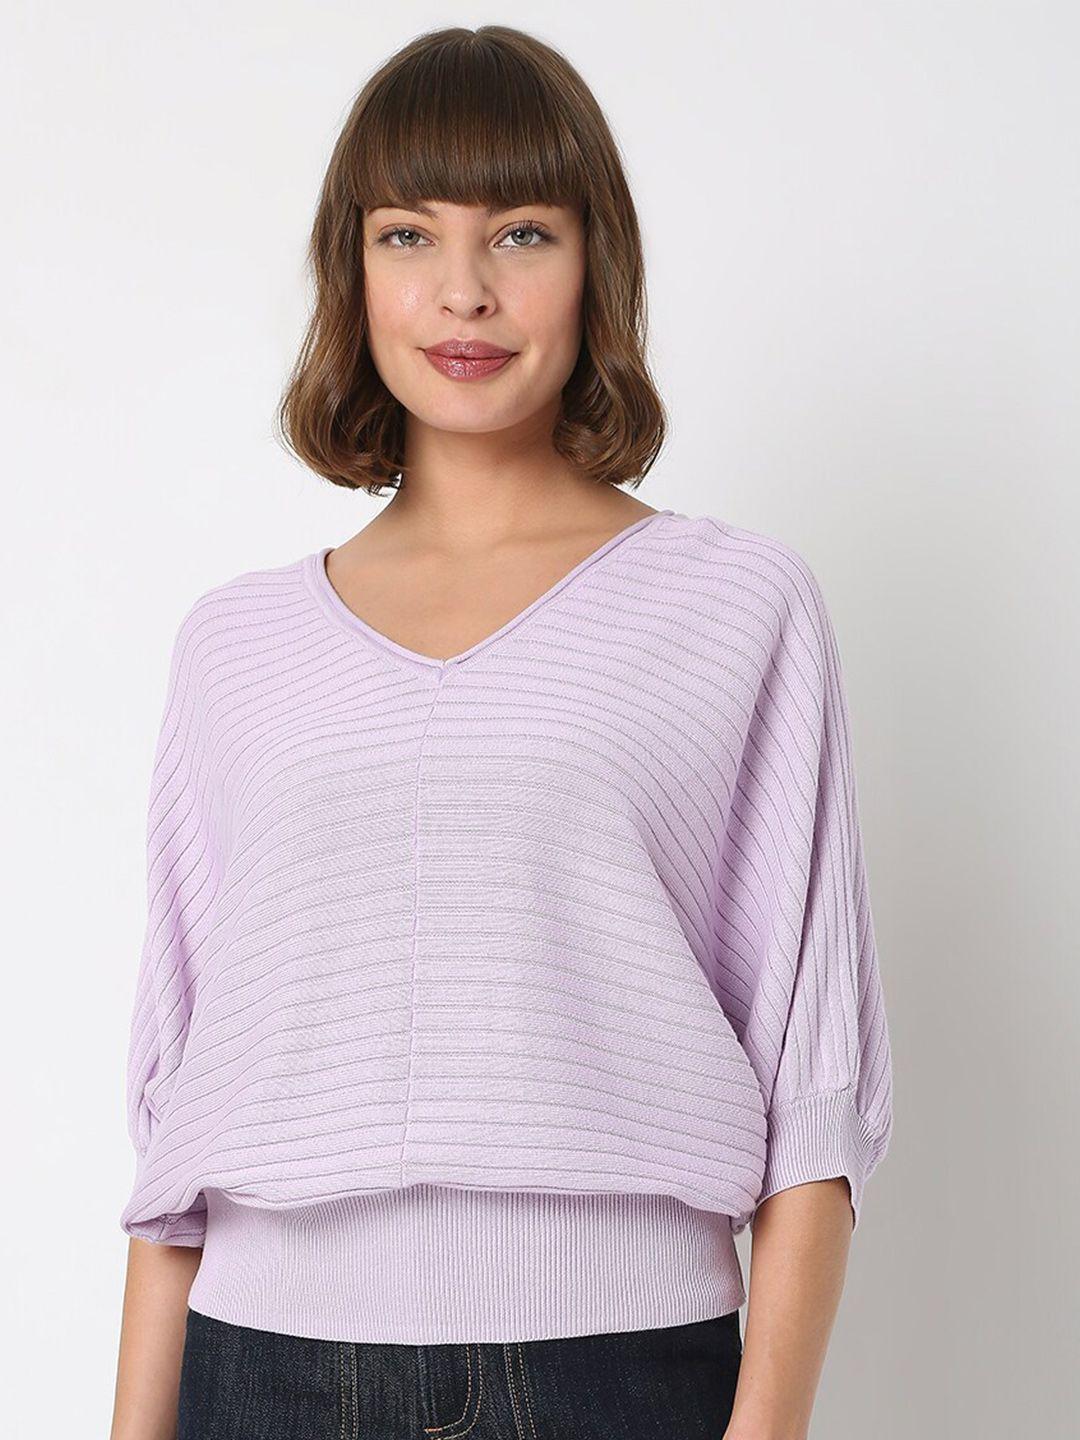 vero-moda-women-purple-striped-cotton-pullover